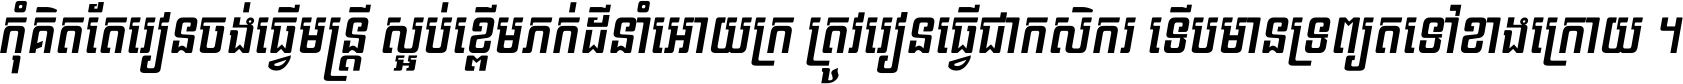 Kh Baphnom 03 MengSamorn Italic